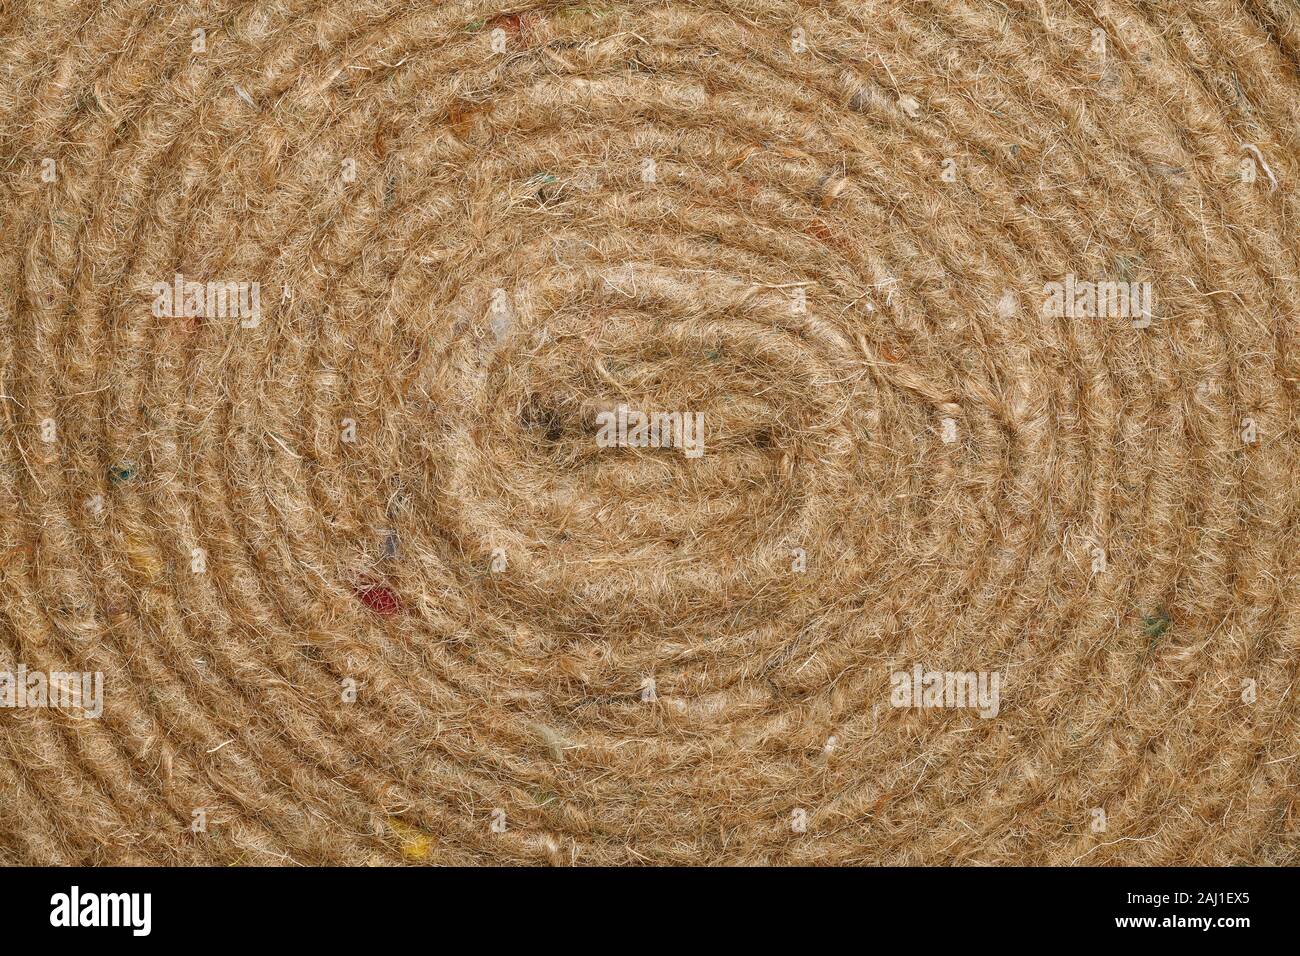 Close up dettaglio di una spirale di grossolana del materiale di feltro Foto Stock